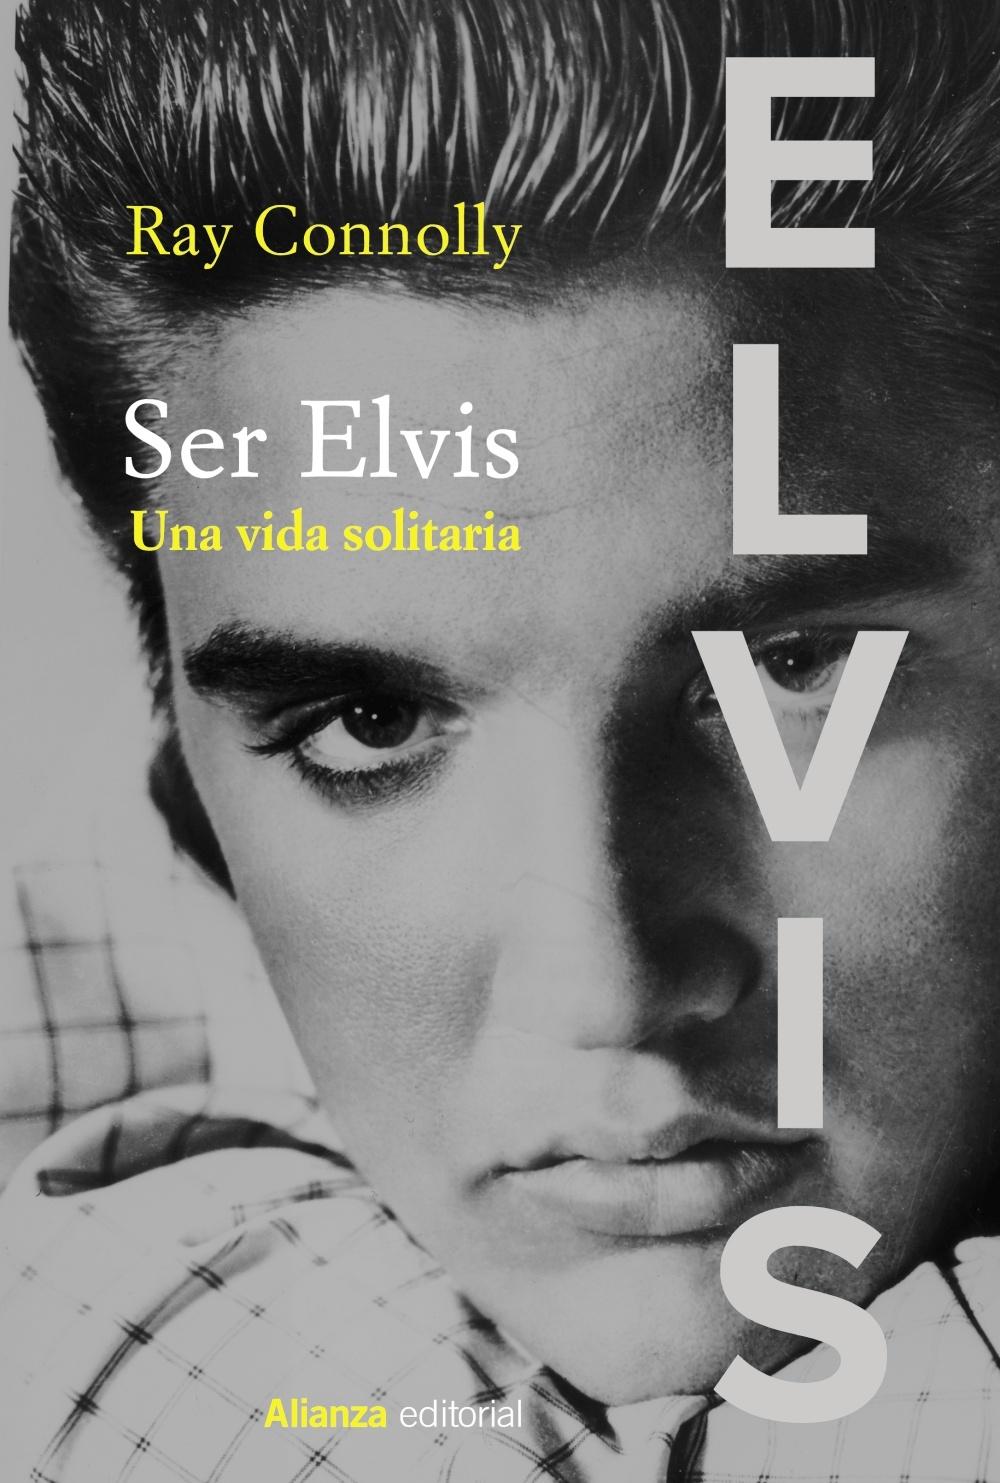 Ser Elvis "Una vida solitaria". 